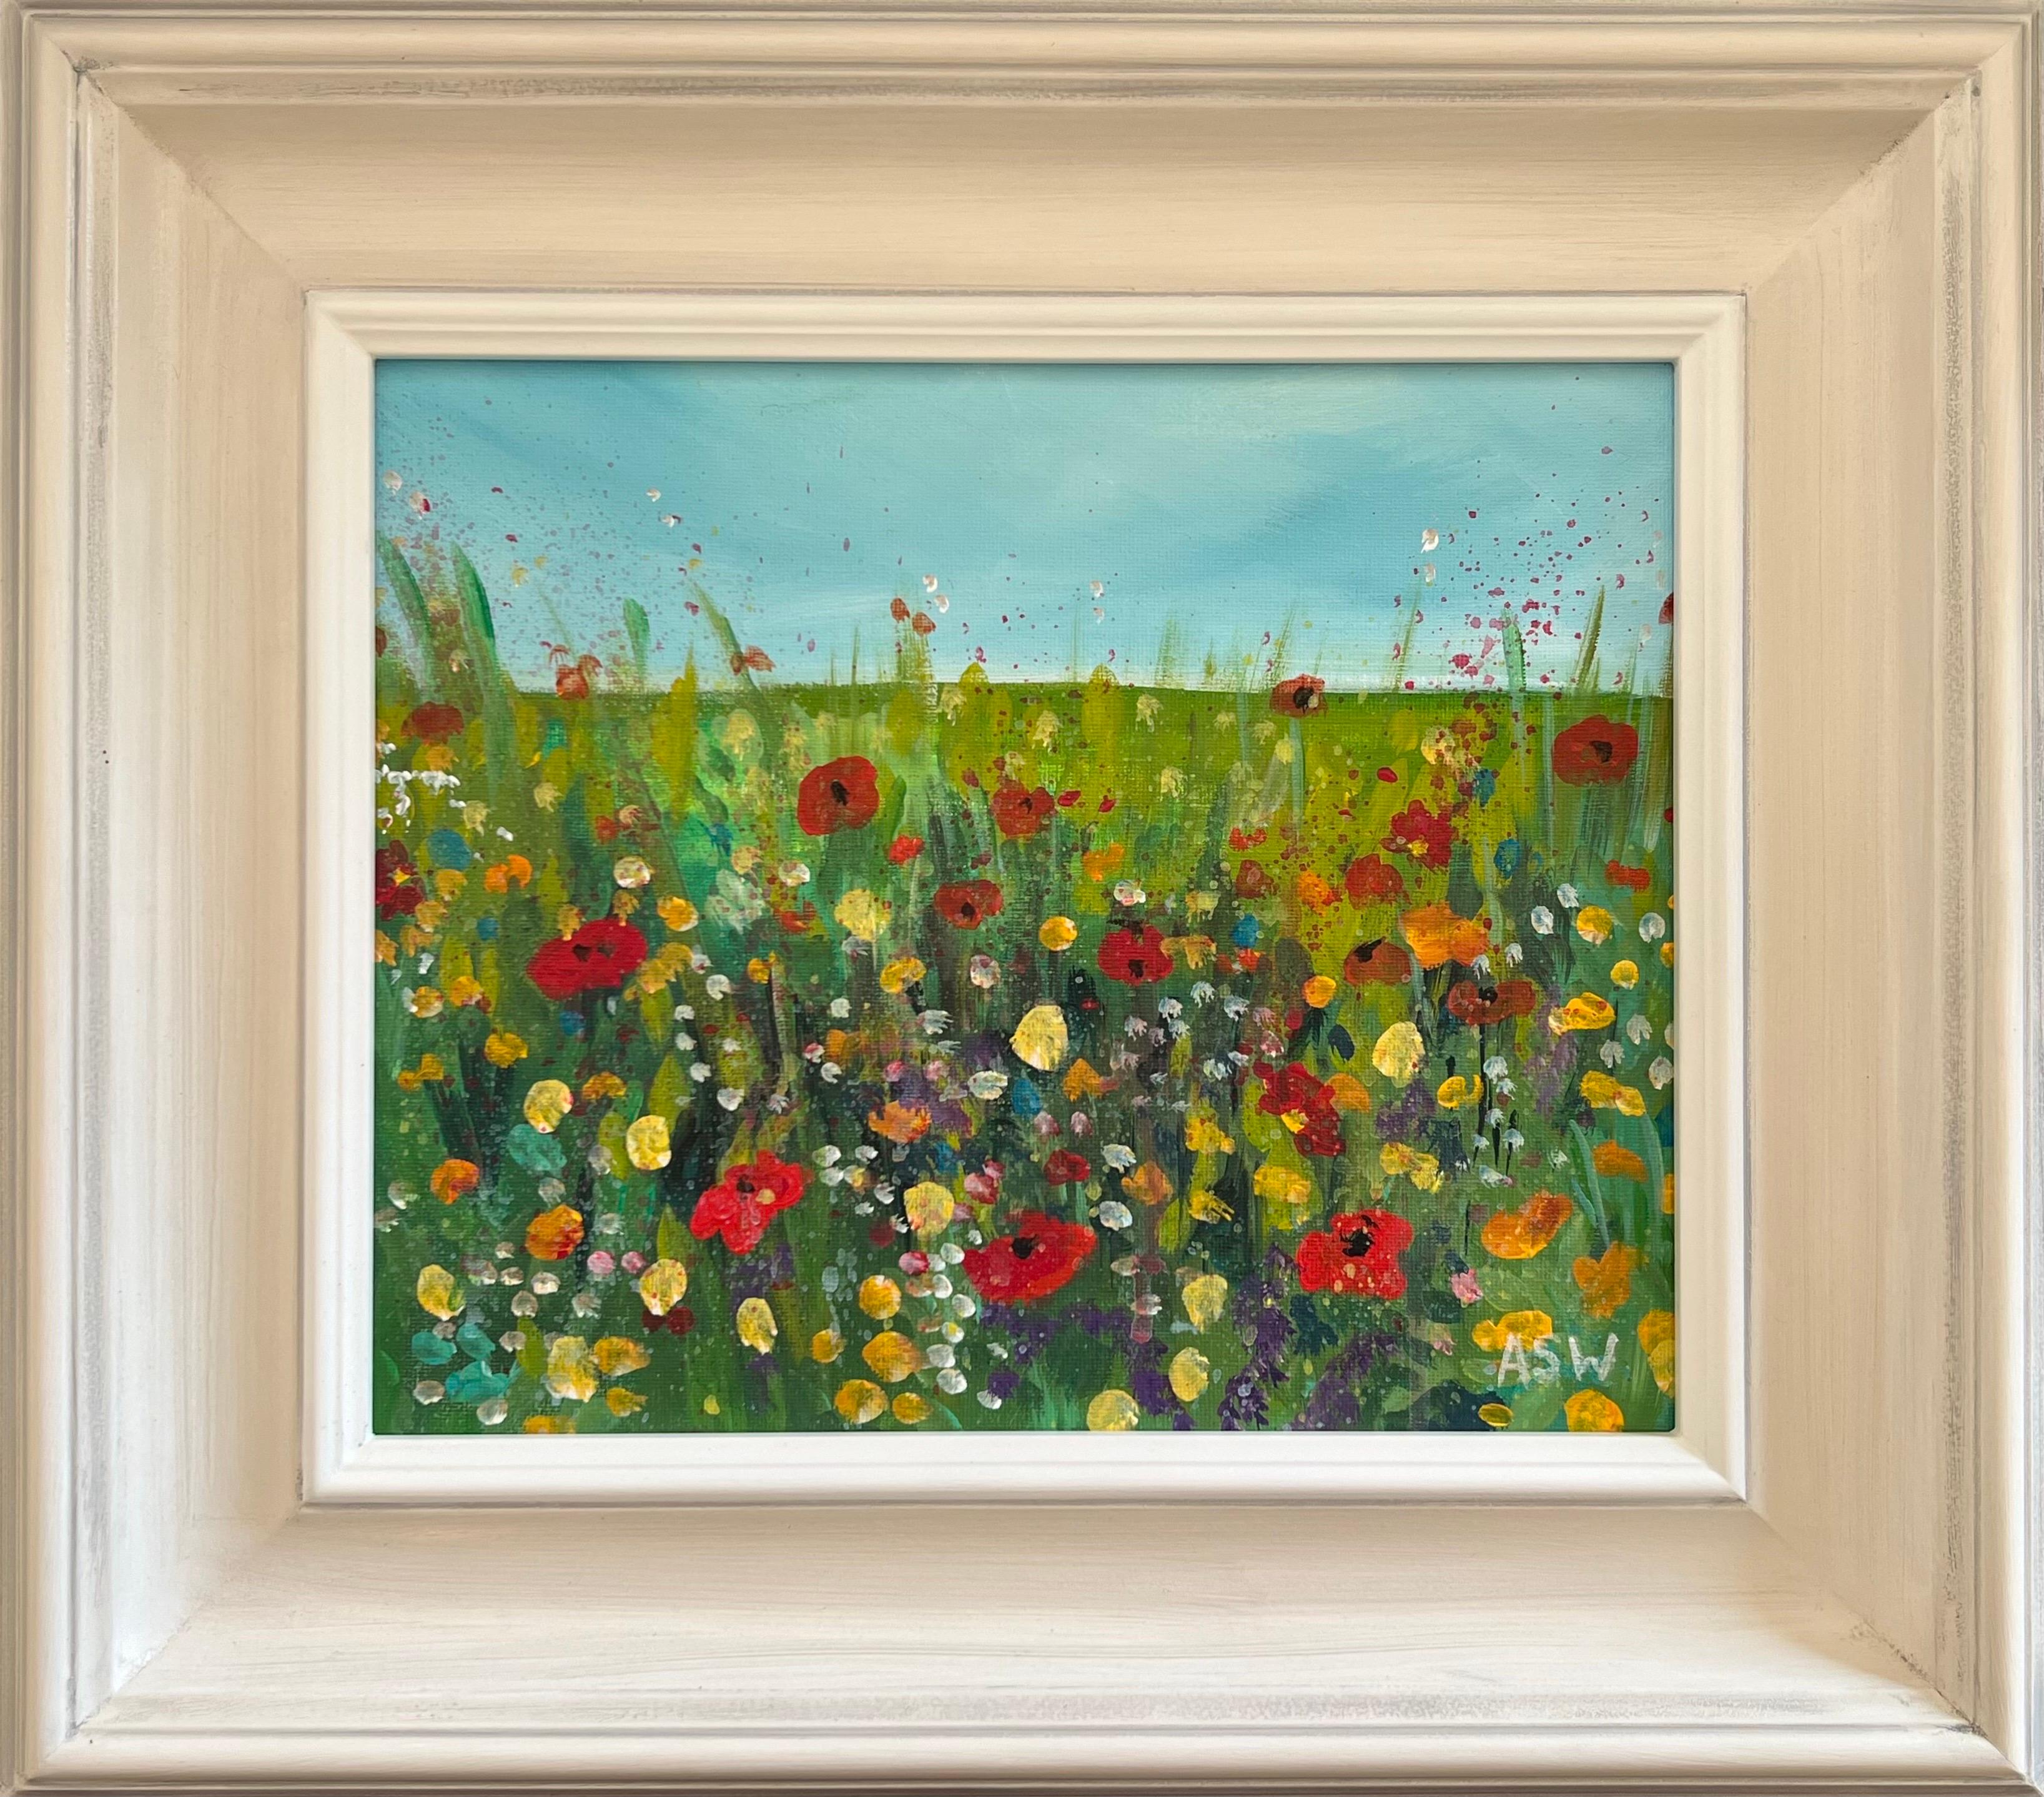 Abstract Painting Angela Wakefield - Fleurs sauvages colorées rouges et jaunes dans un paysage de prairie par un artiste contemporain